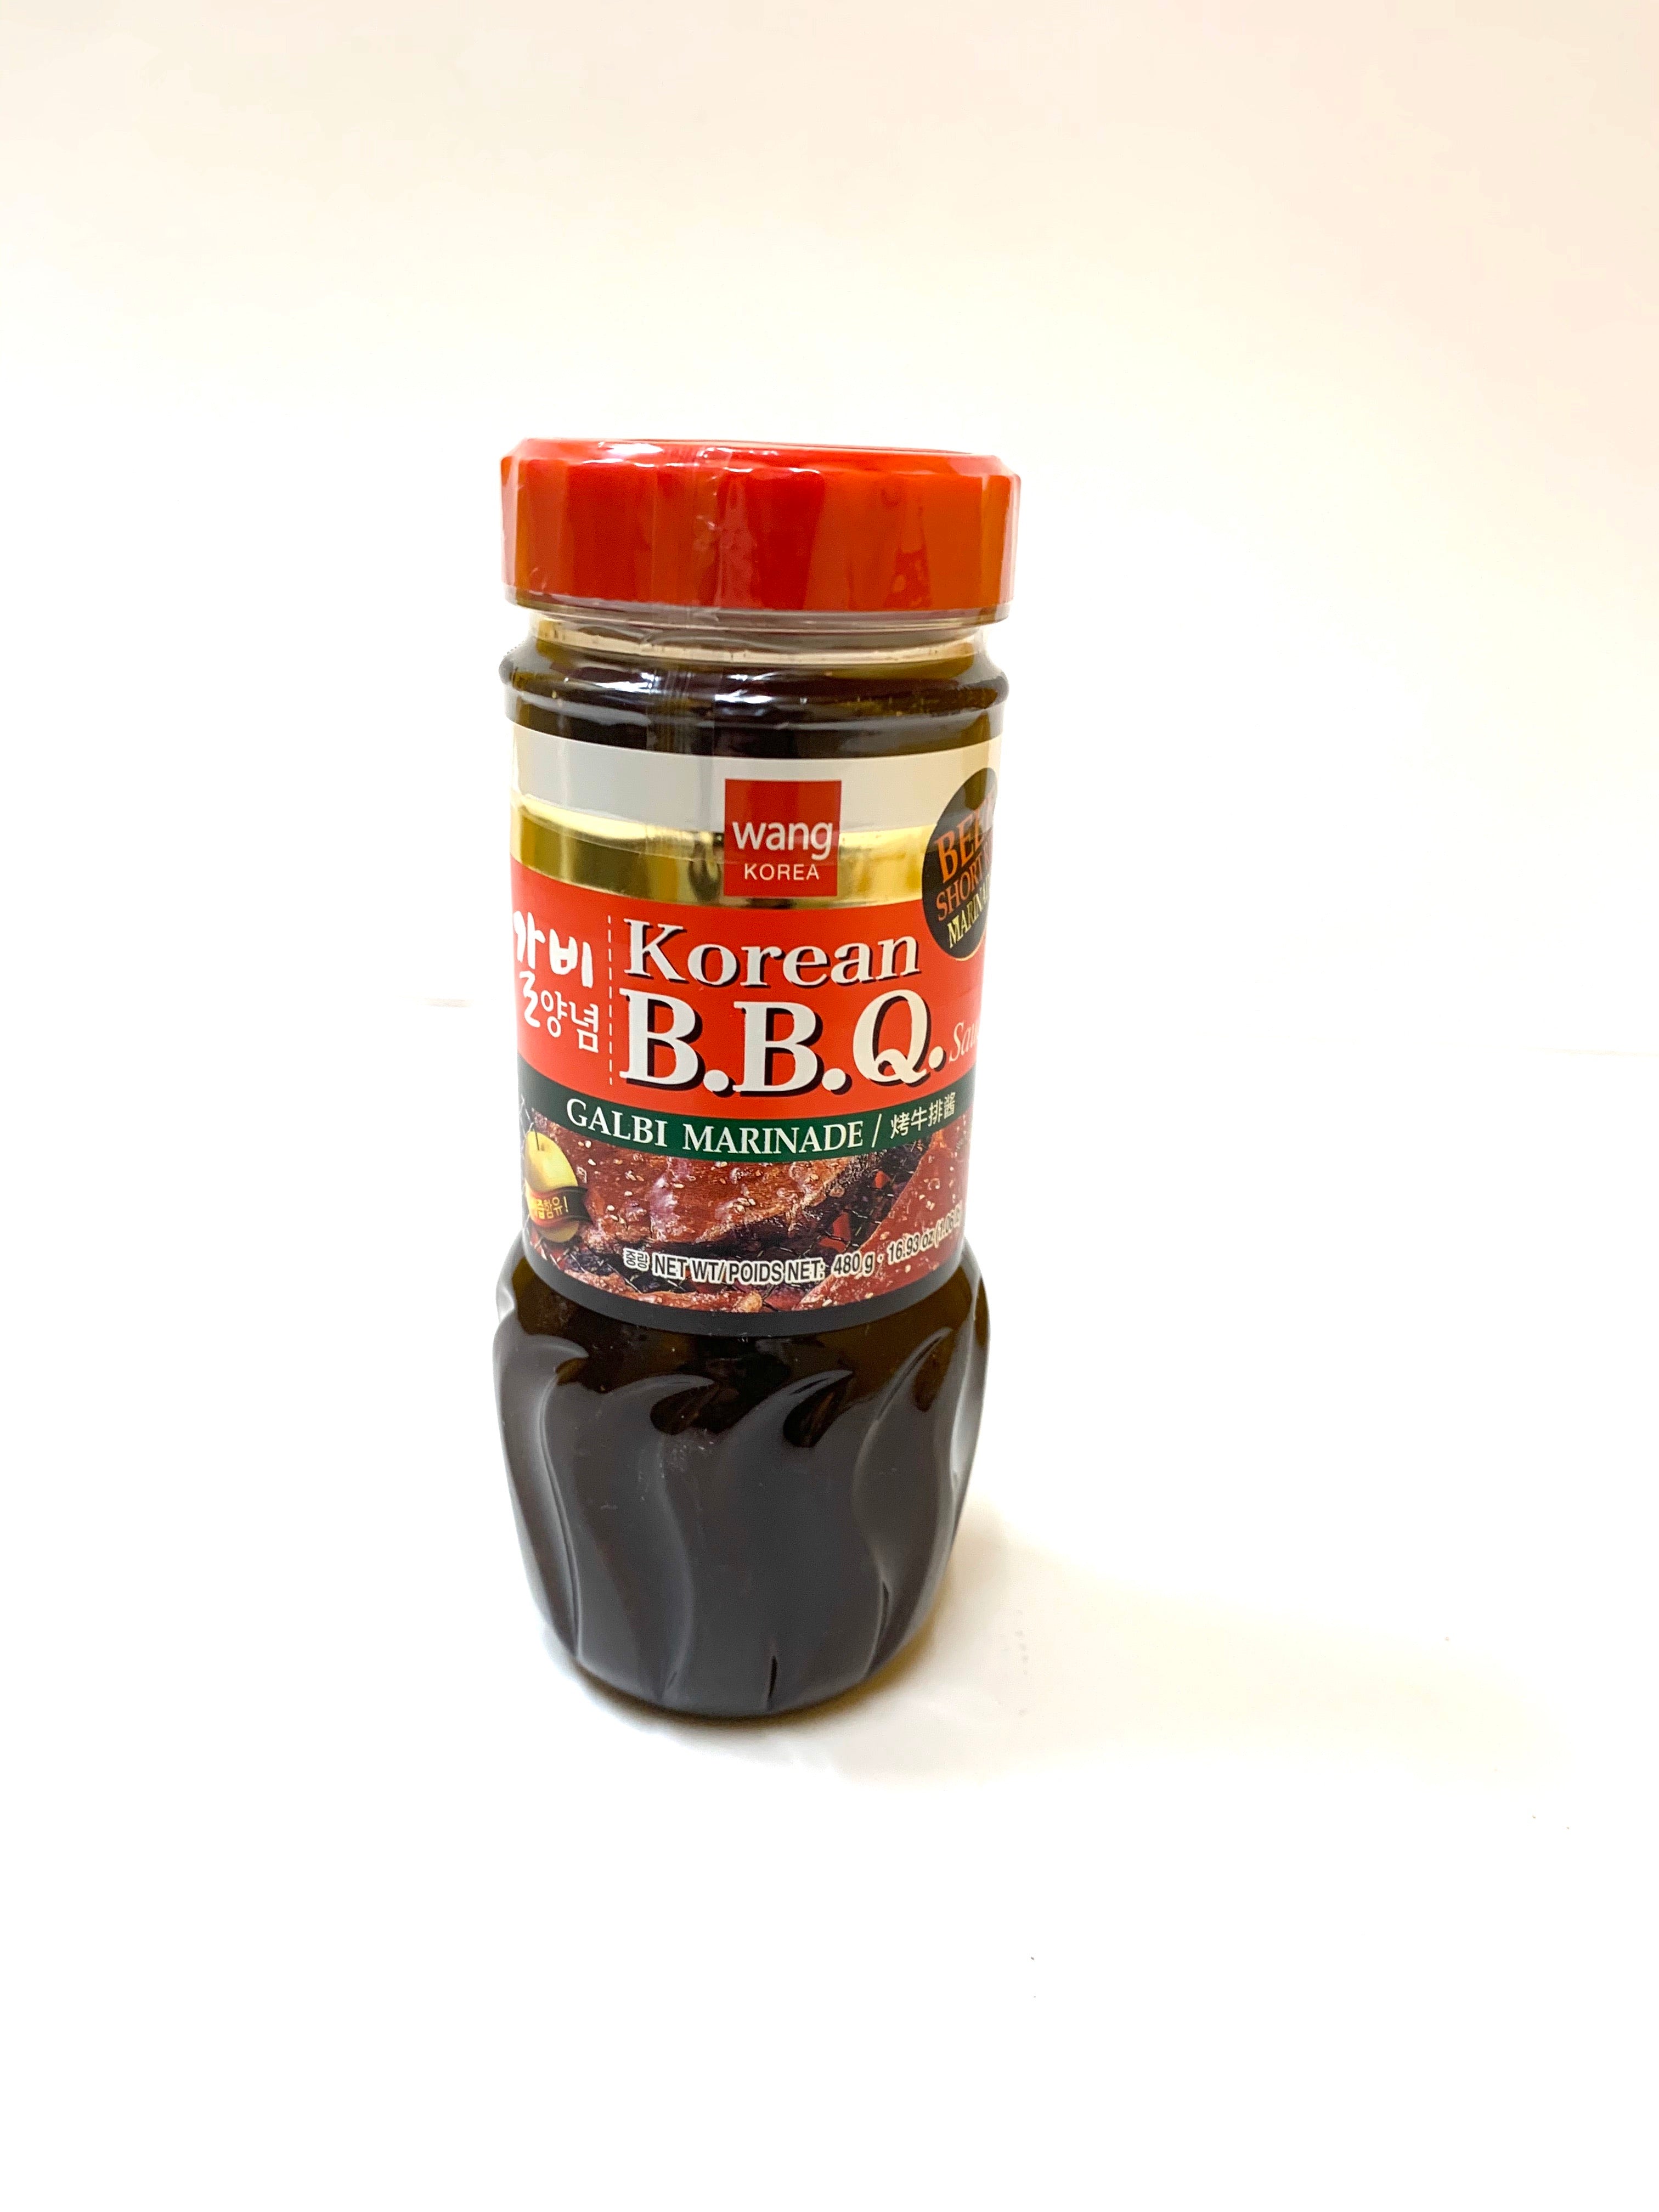 Wang Korean BBQ Sauce Galbi (costilla corta de res) Marinada - 480g/16.93oz